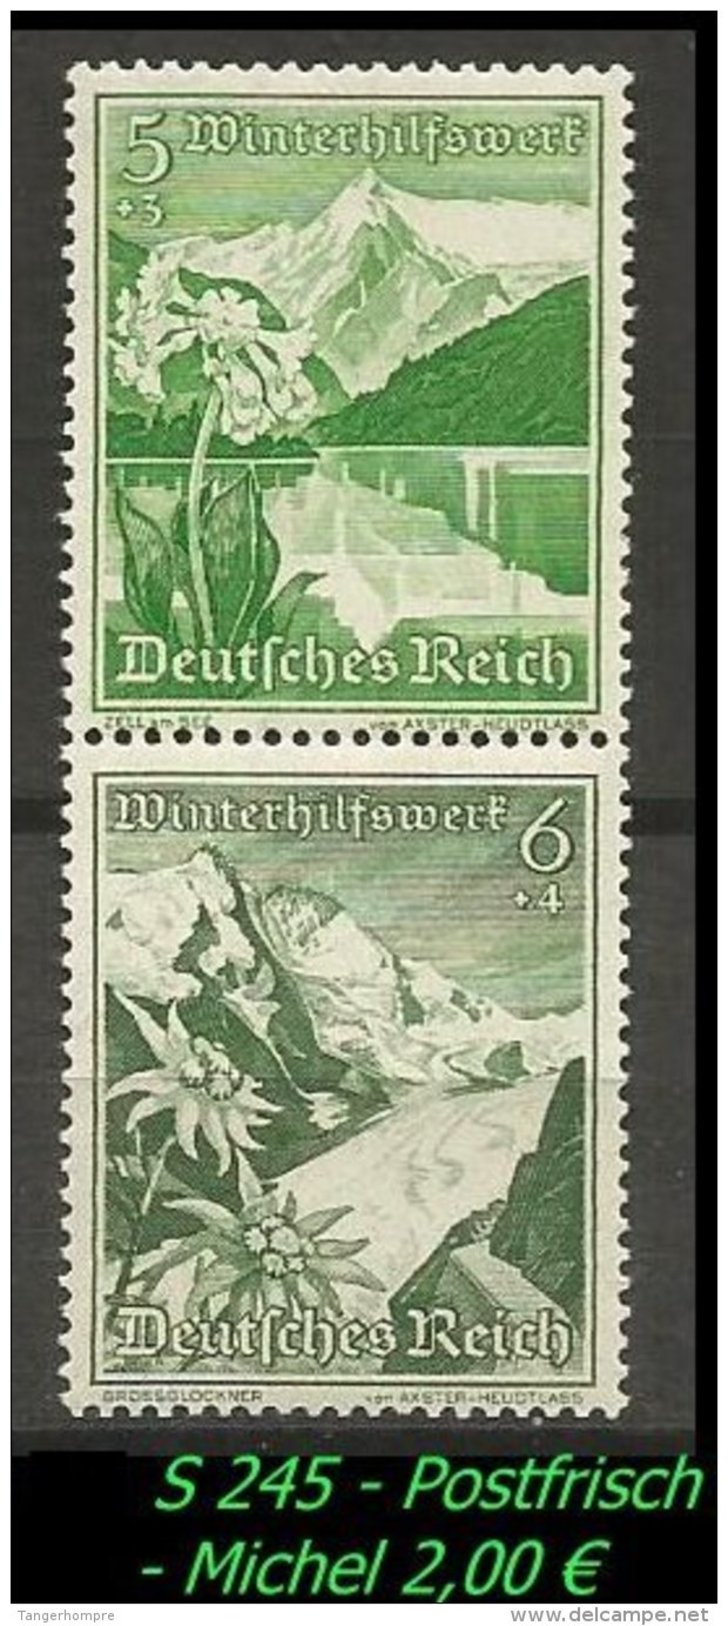 Deutsches Reich - Zusammendruck - Mi. Nr. S 245 - Postfrisch. - Zusammendrucke